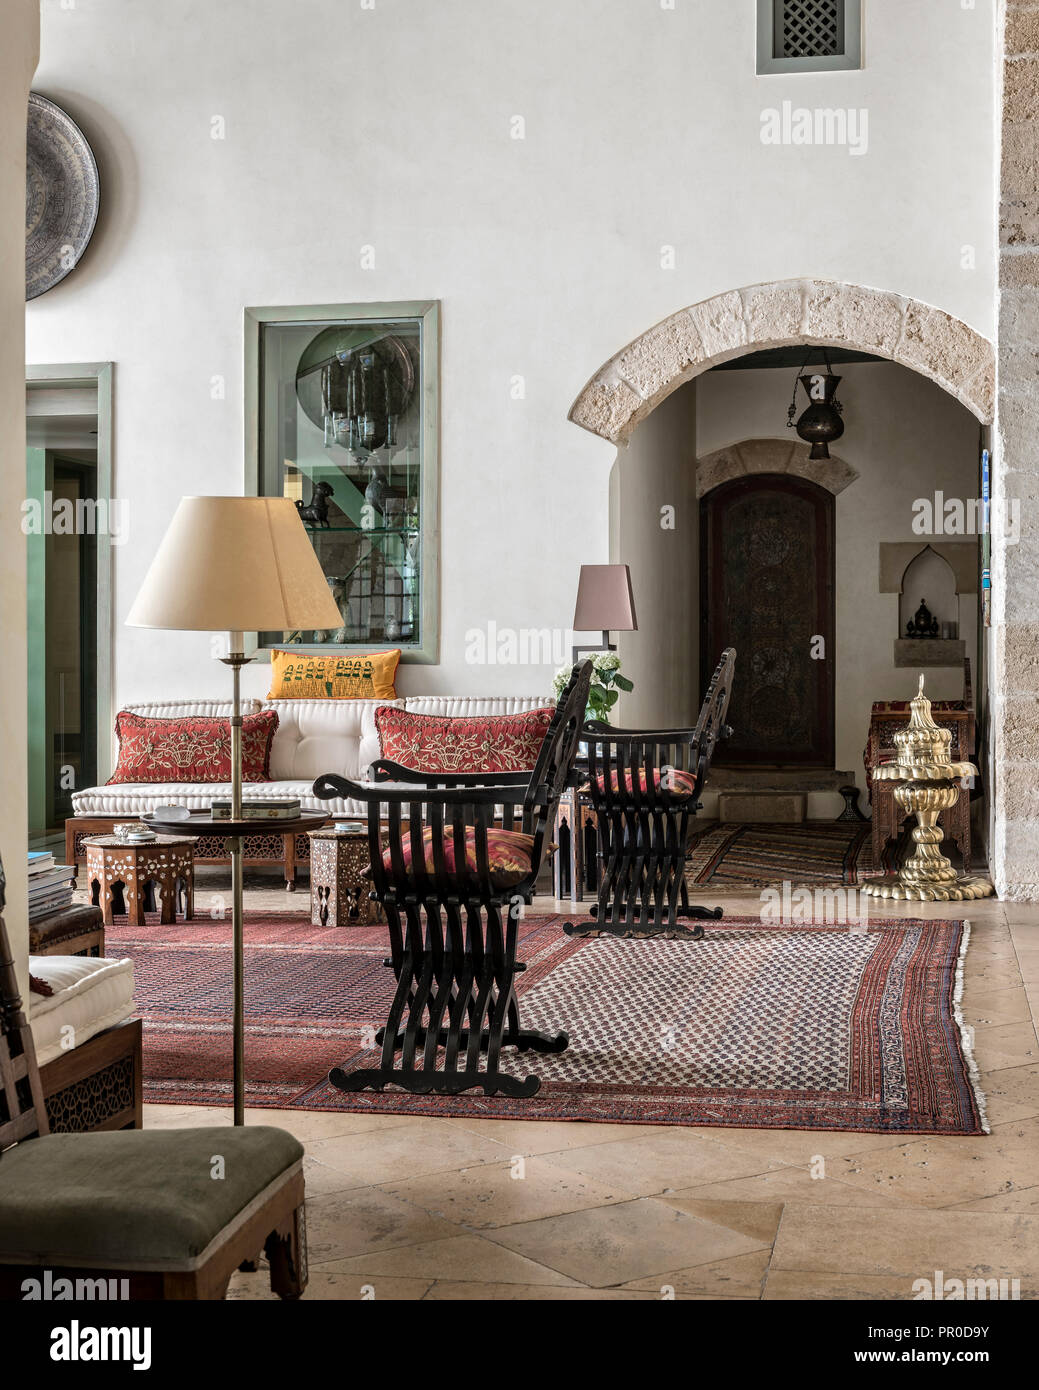 Réception Liwan banquette de style ottoman et rares meubles anciens tapis Malayer' composites Banque D'Images